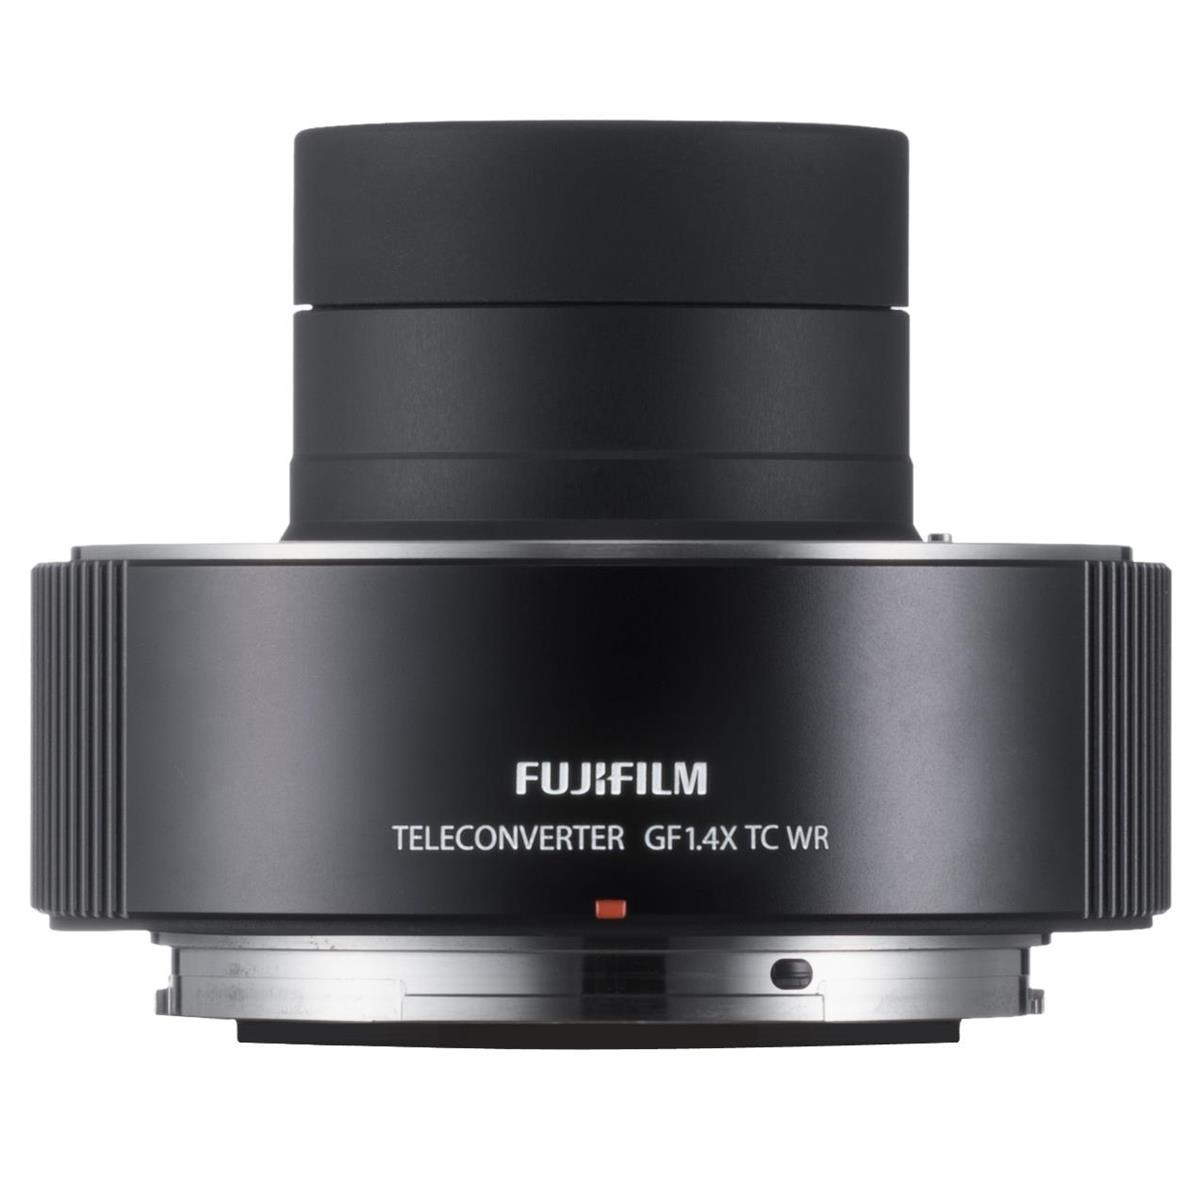 

Fujifilm GF 1.4X TC WR Teleconverter